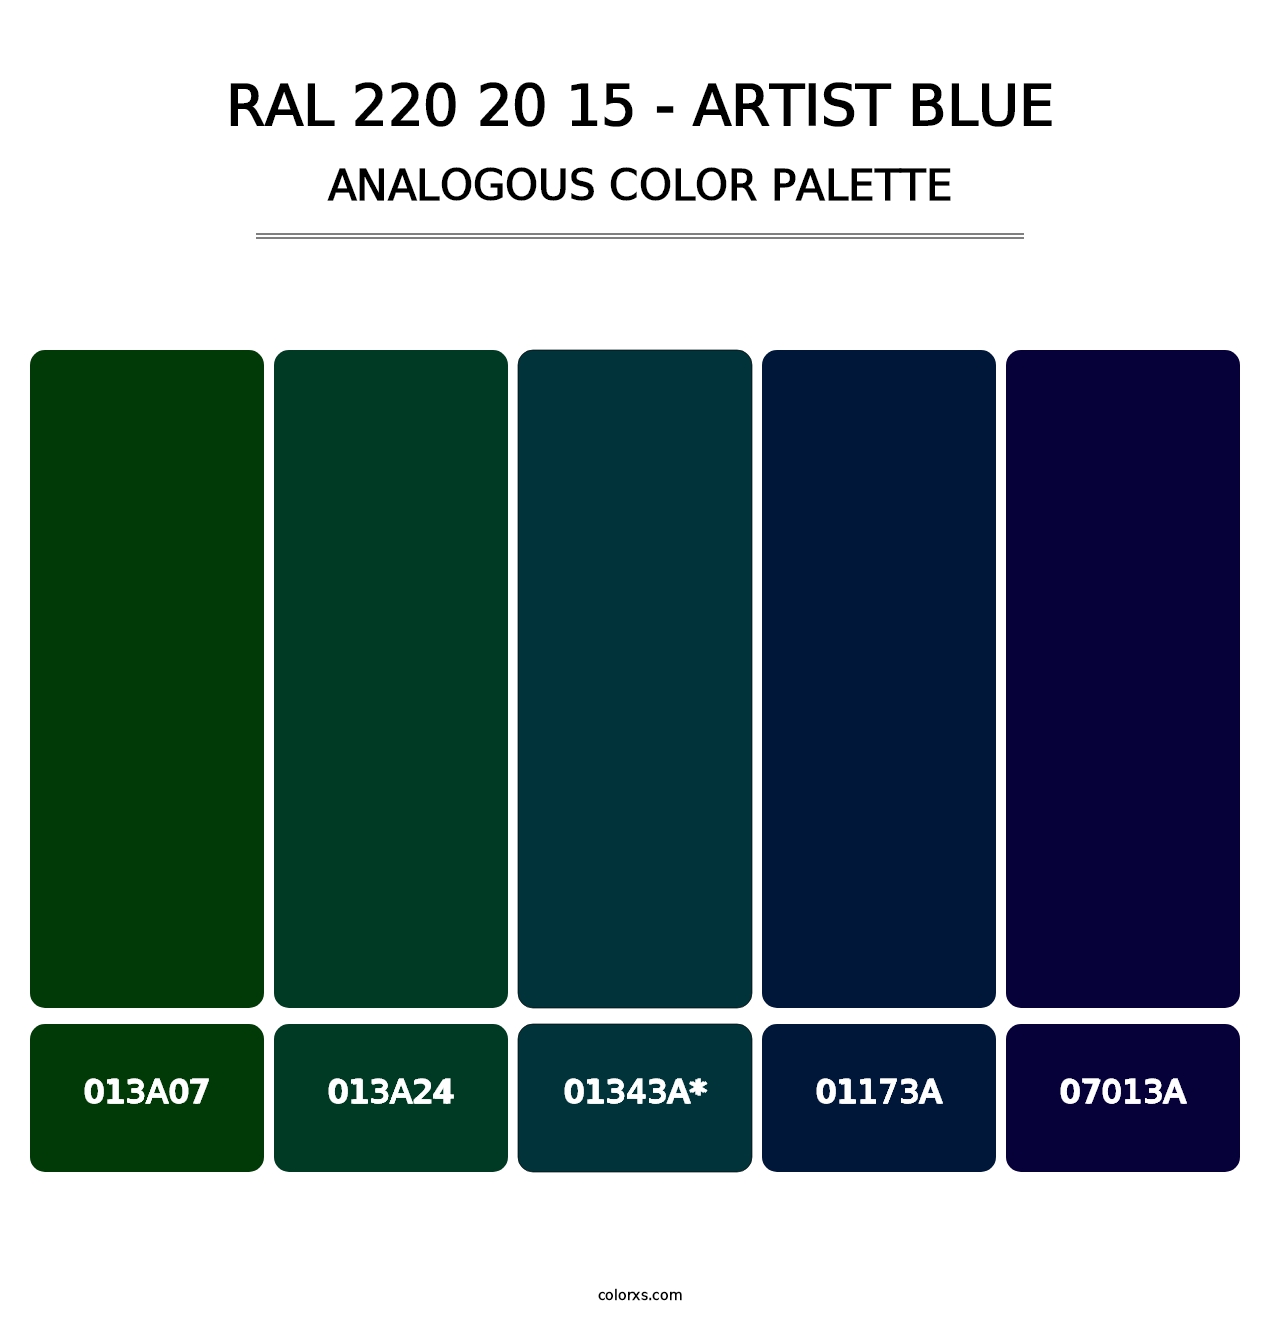 RAL 220 20 15 - Artist Blue - Analogous Color Palette